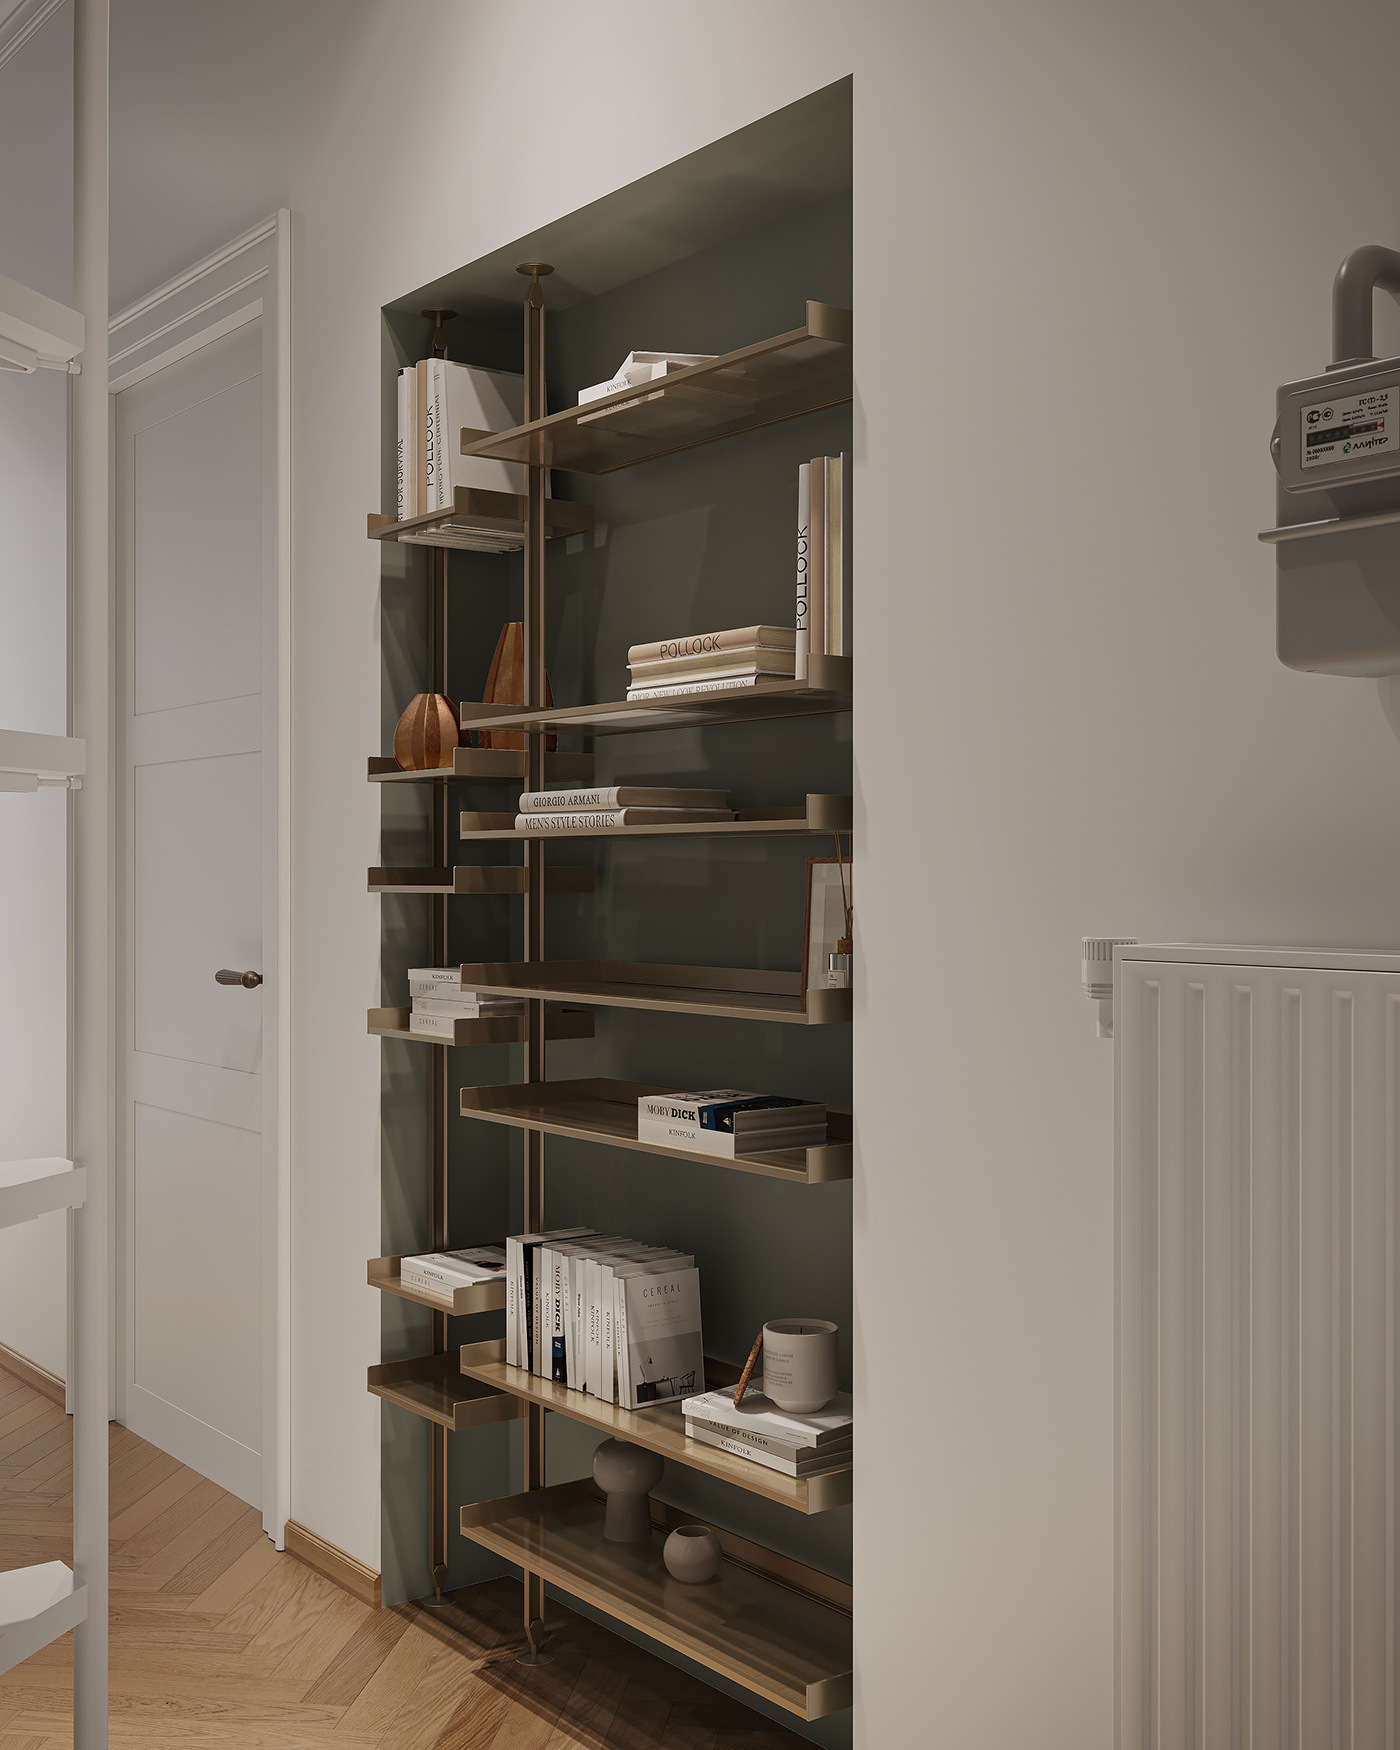 bedroom design corridor design visualization Render modern 3ds max CGI interior design  architecture corona